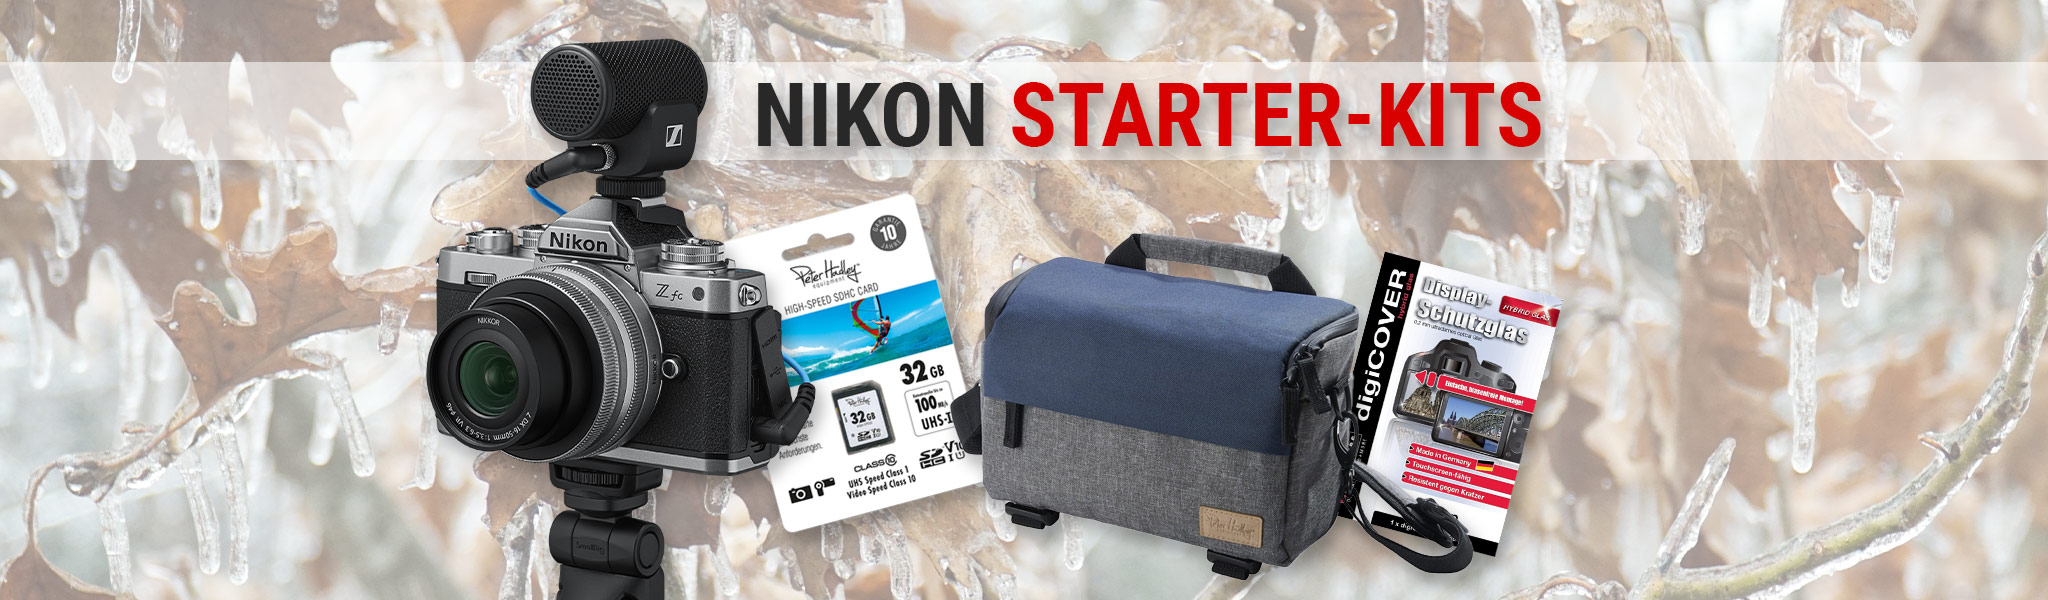 Nikon Starter-Kits Aktion bei Fotomax